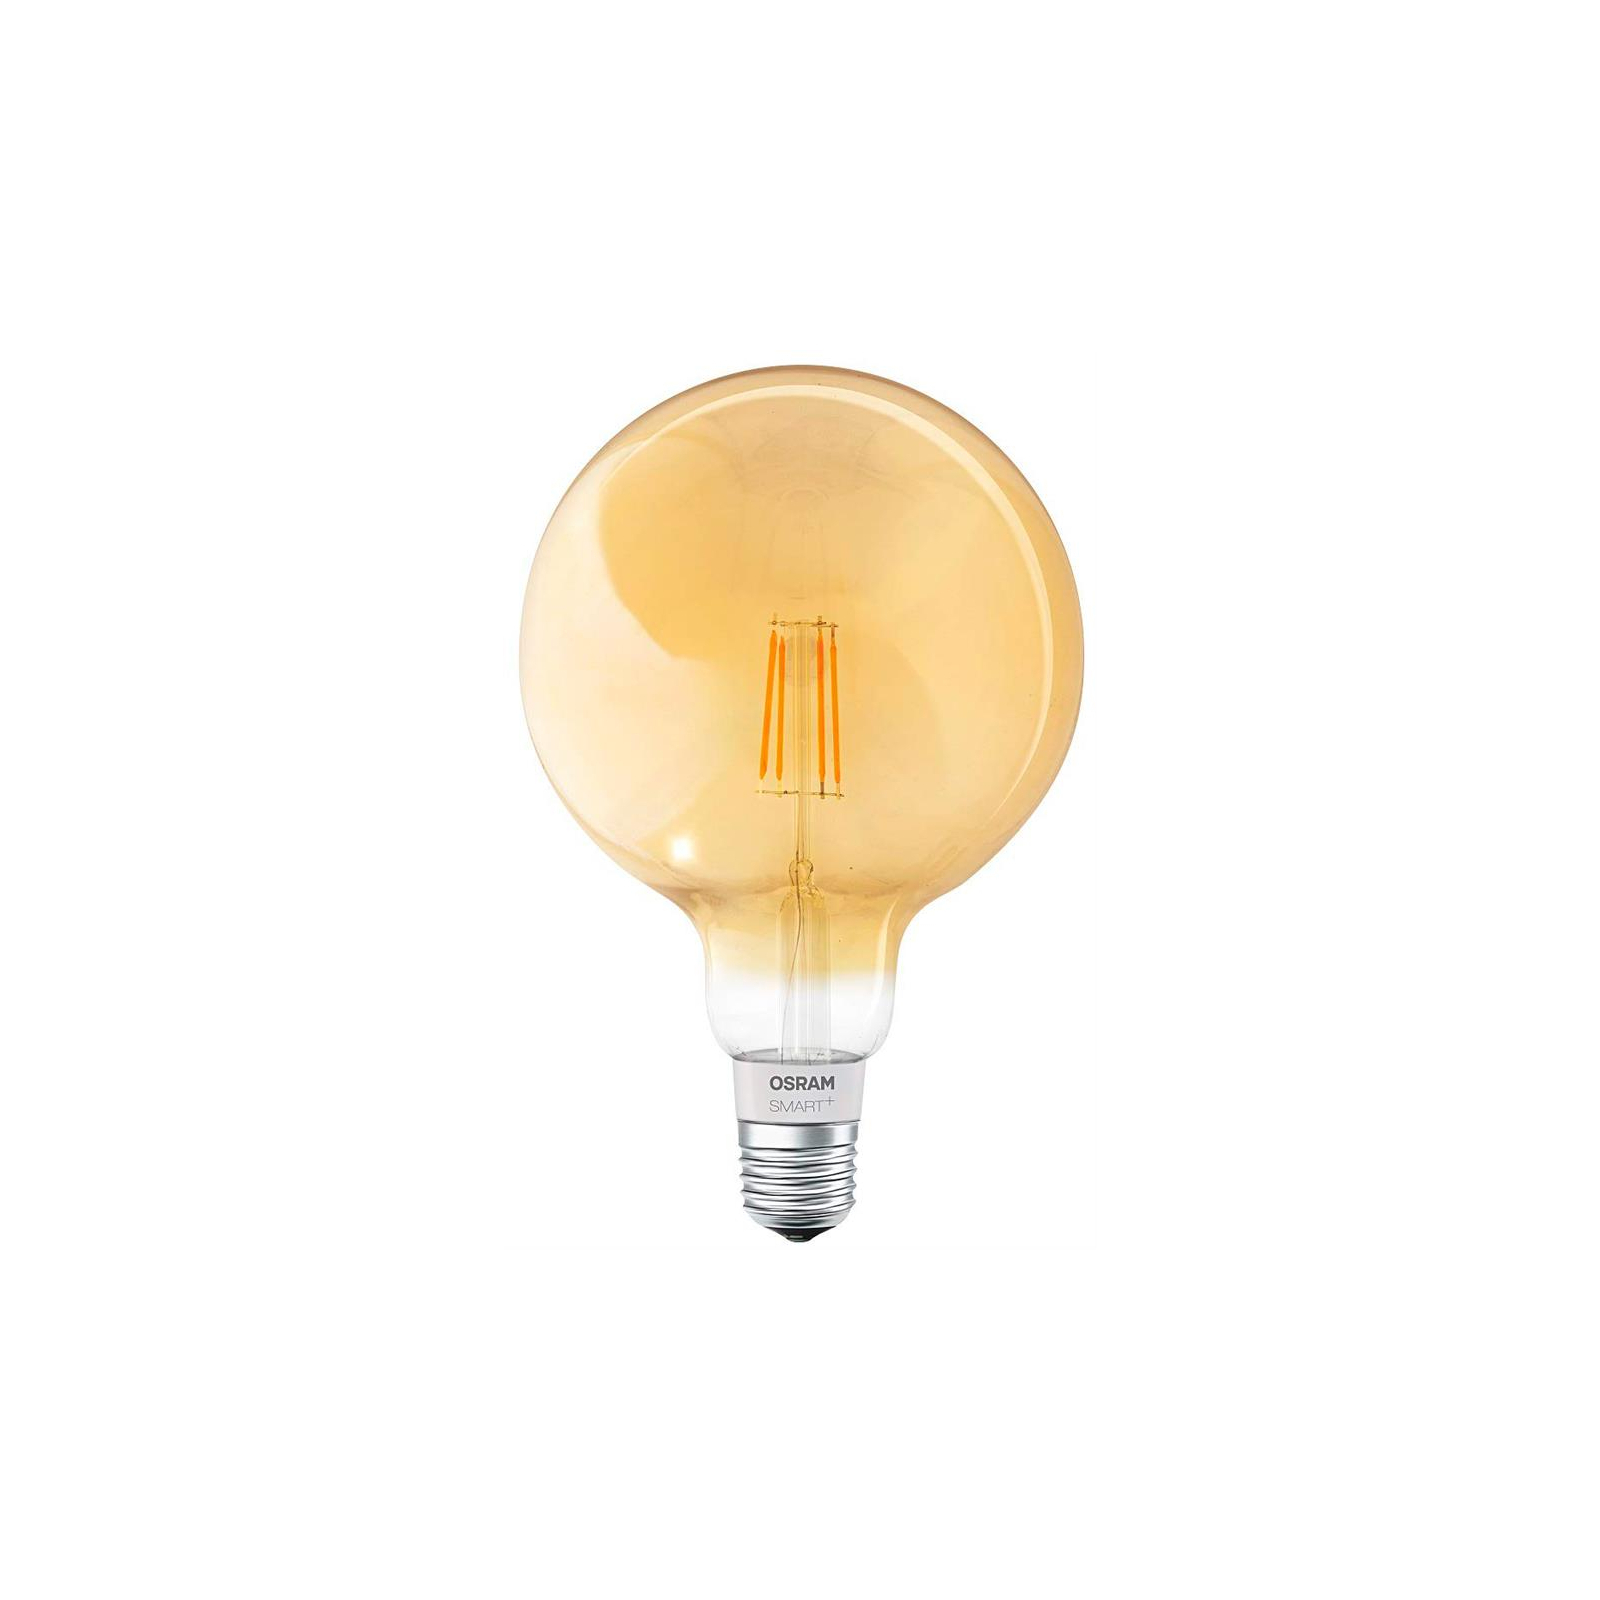 Умная лампочка Osram SMART LED G125 (4058075174504)